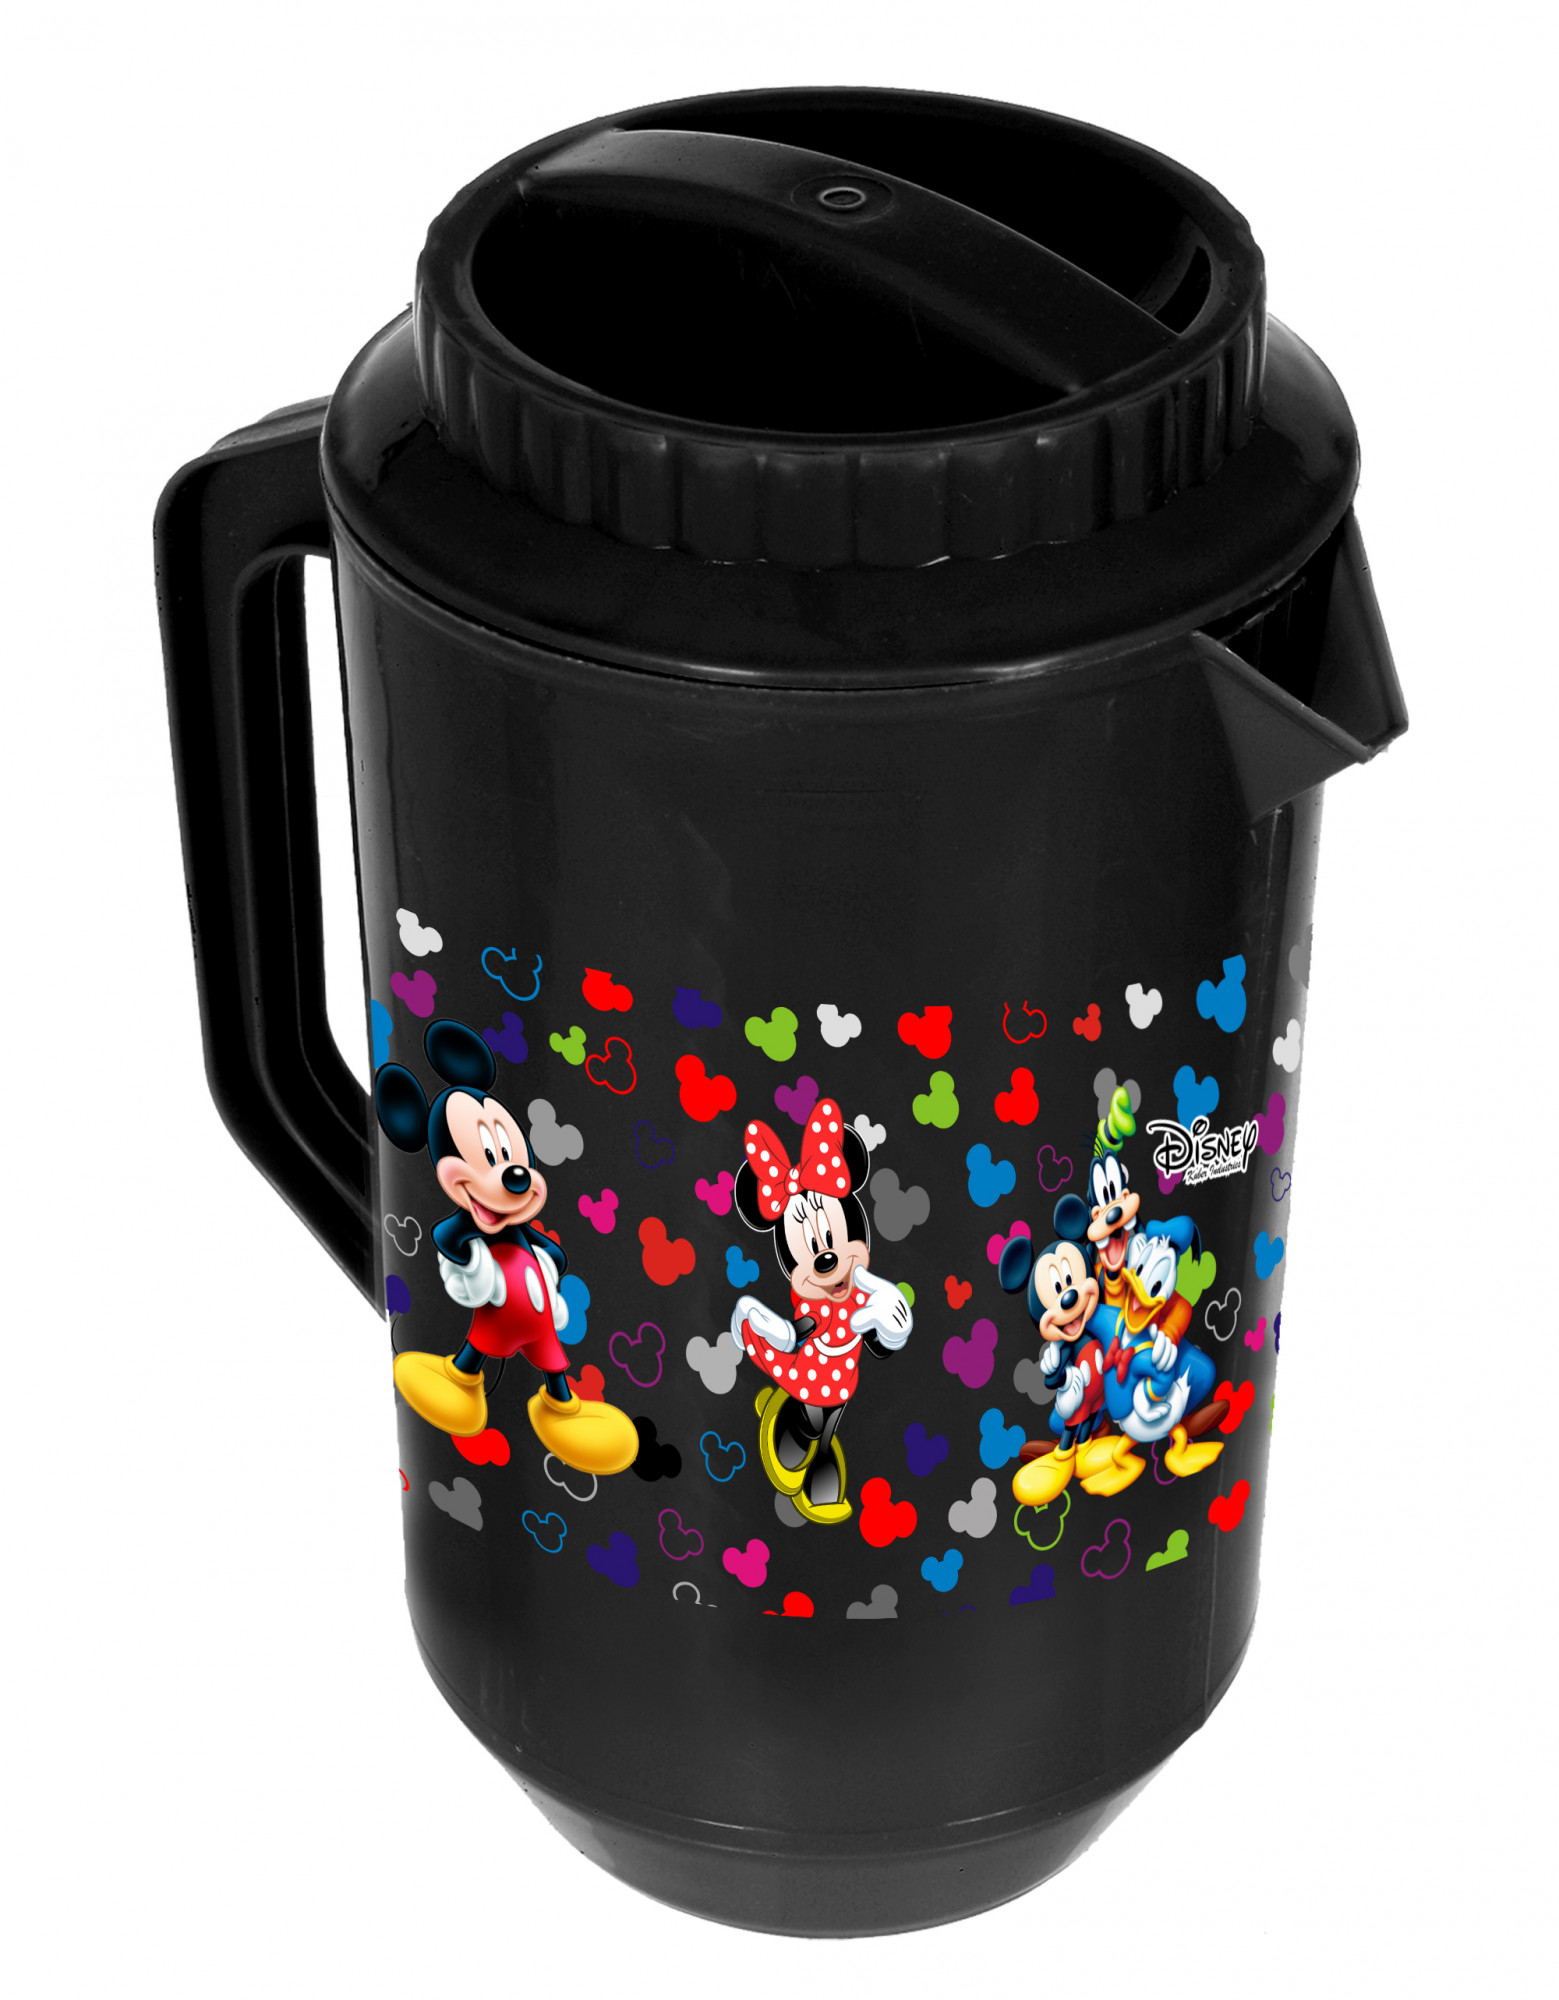 Kuber Industries Disney Team Mickey Print Unbreakable Multipurpose Plastic Water & Juice Jug With Lid,2 Ltr (Black)